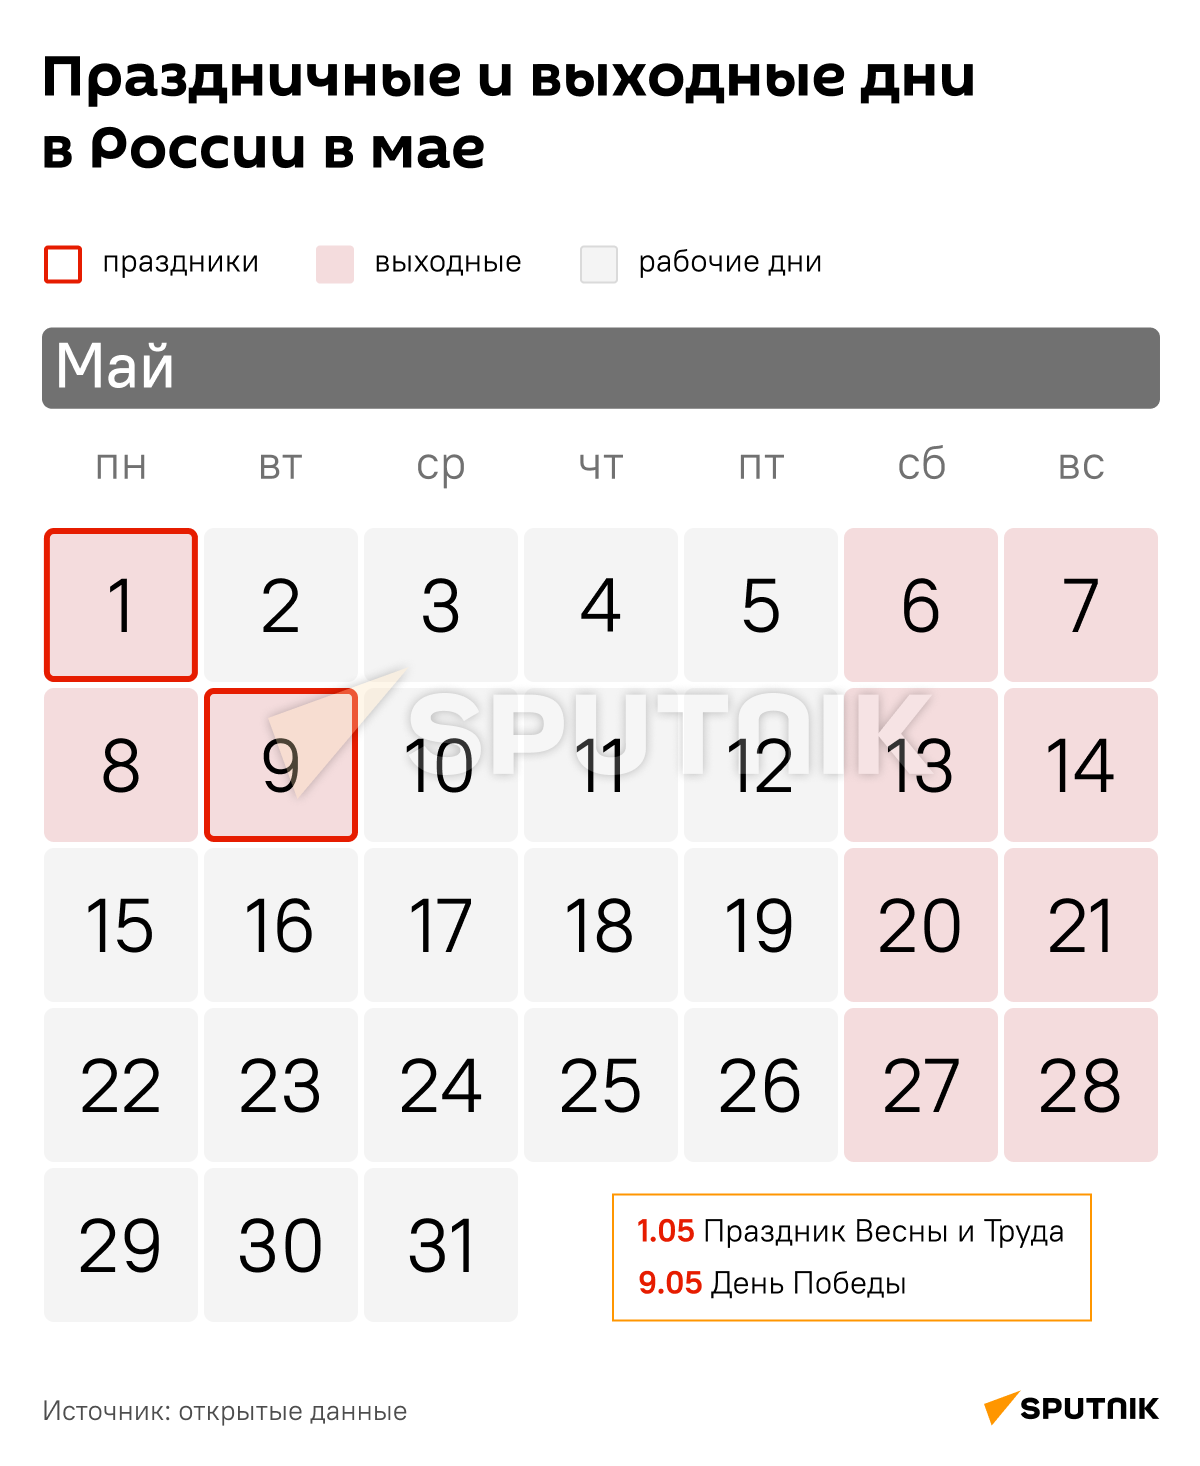 Праздничные и выходные дни  в России в мае - Sputnik Таджикистан